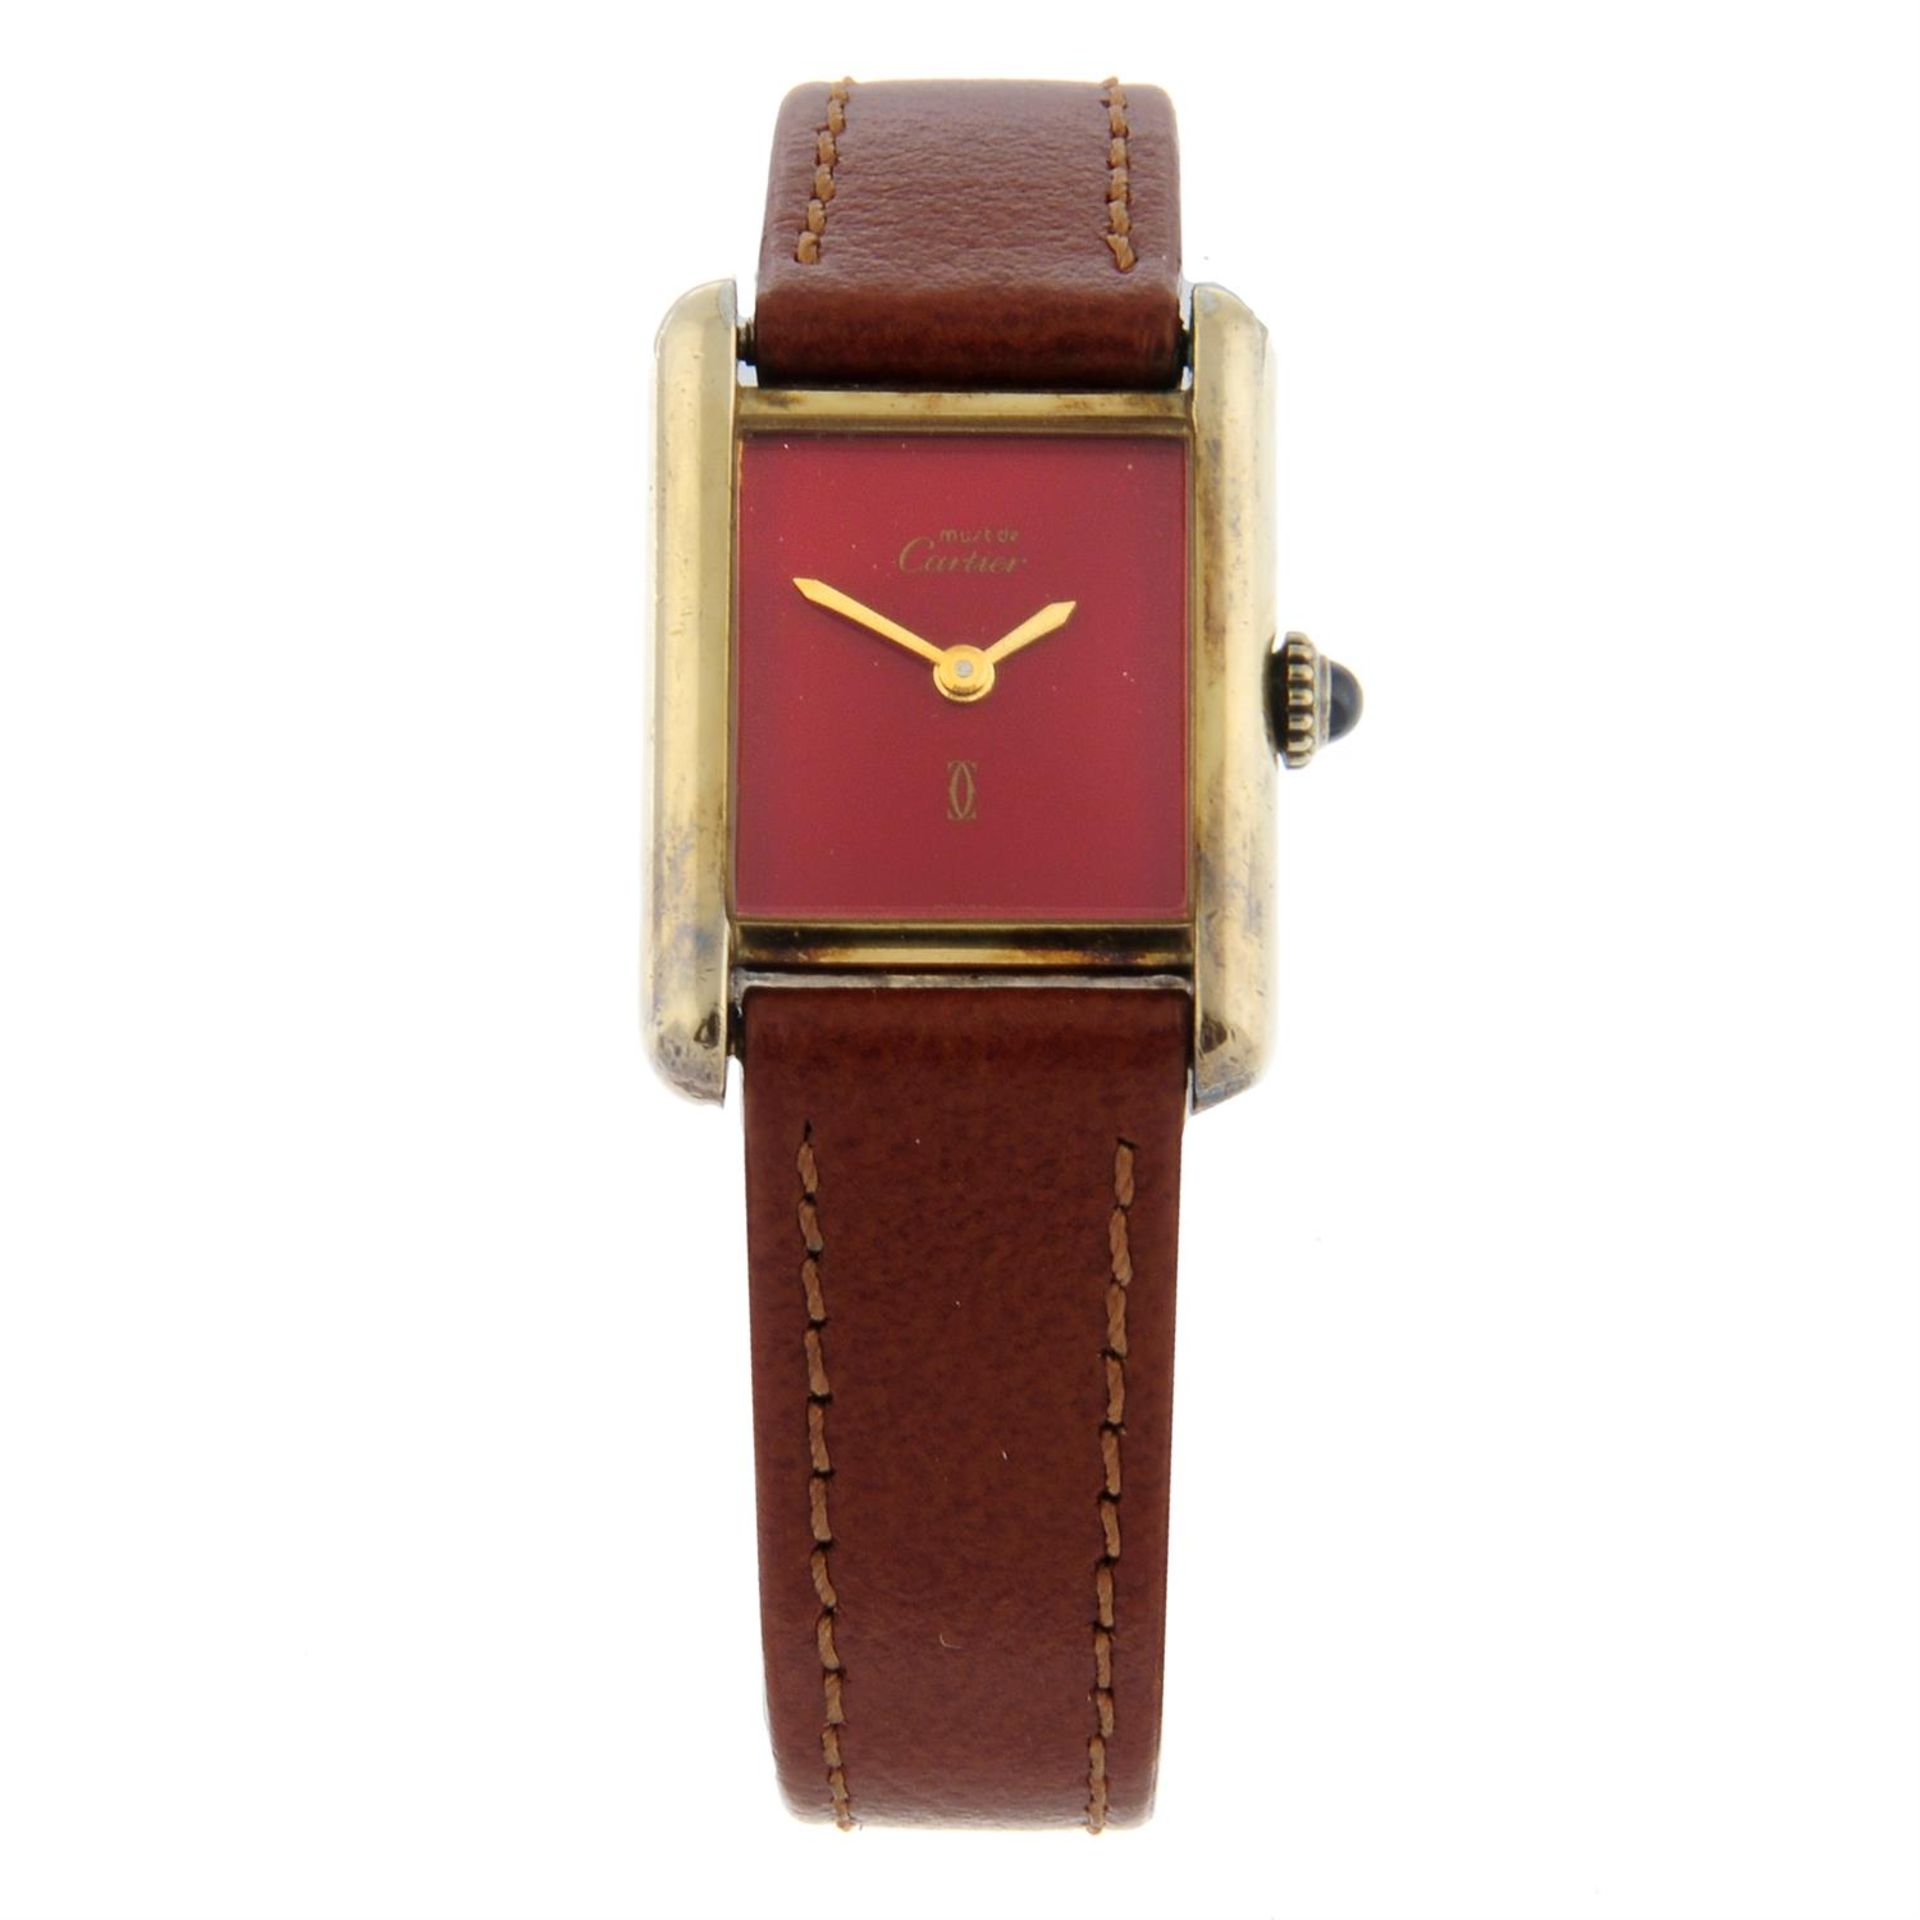 CARTIER - a gold plated silver Must de Cartier wrist watch, 20mm.